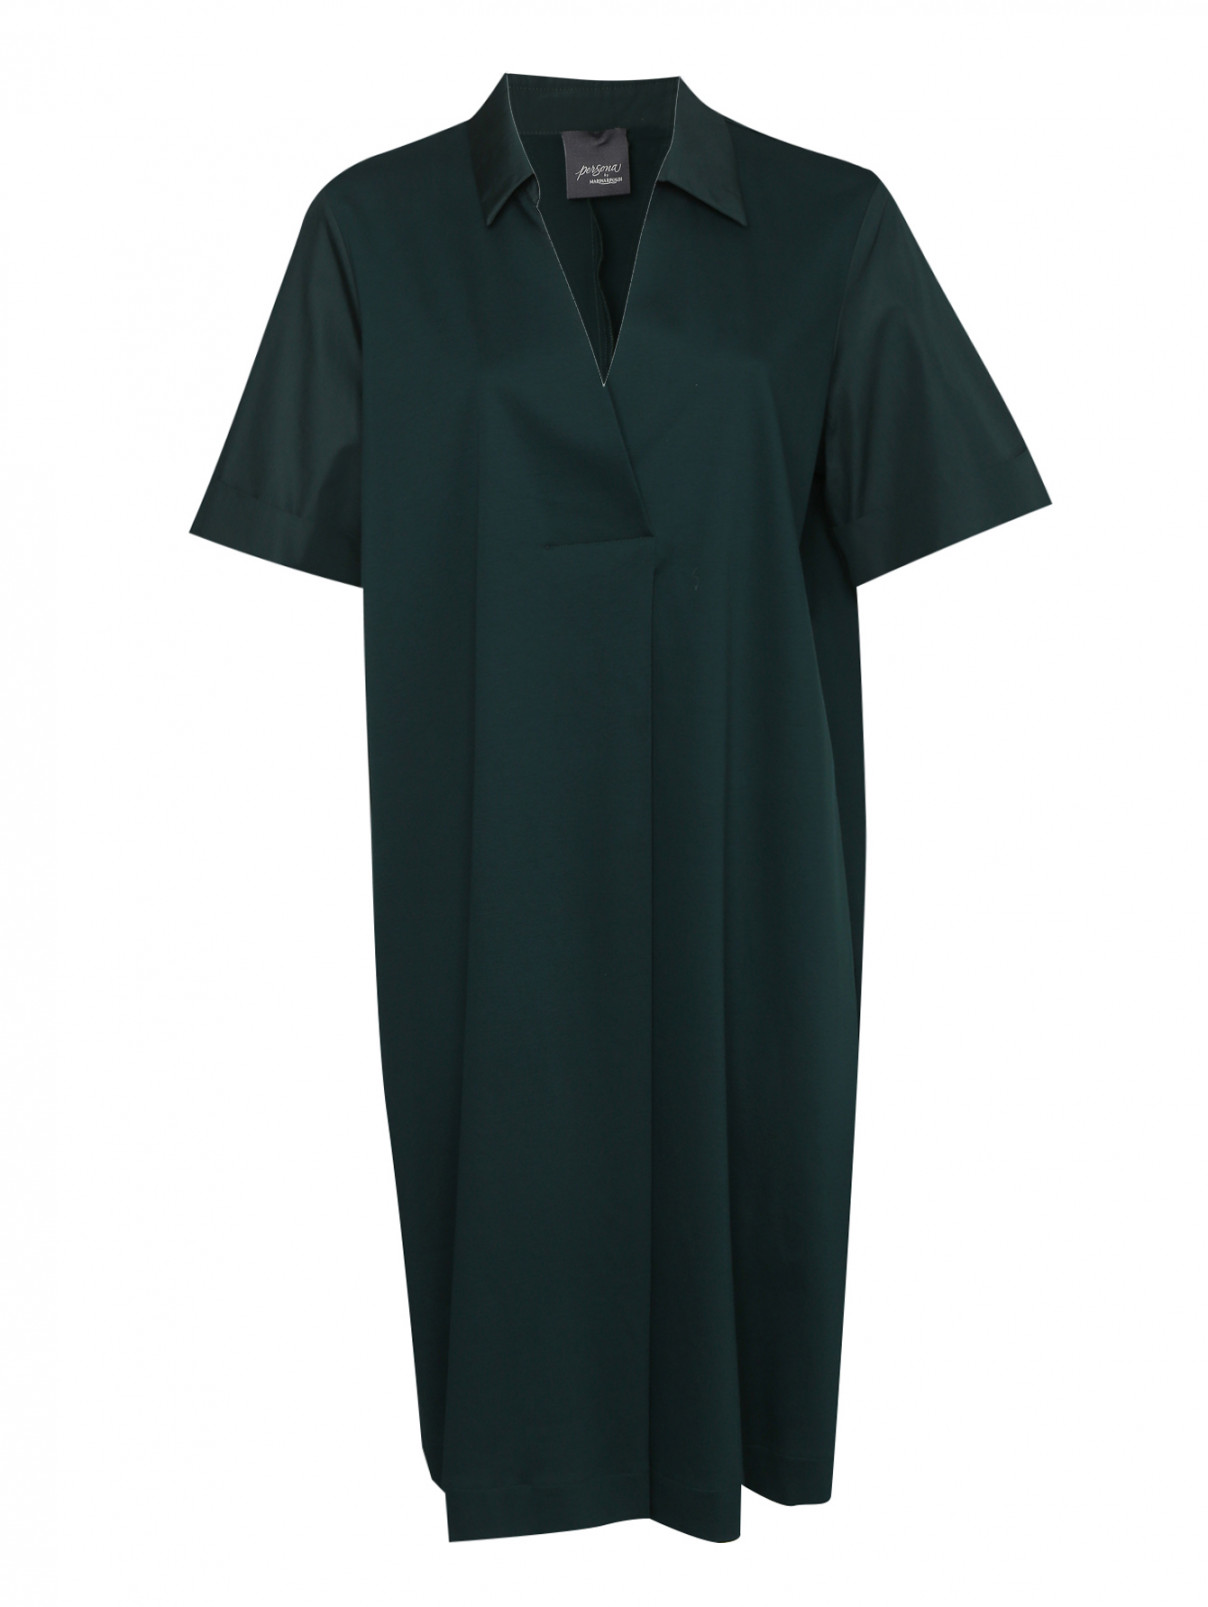 Платье из хлопка с короткими рукавами Persona by Marina Rinaldi  –  Общий вид  – Цвет:  Зеленый